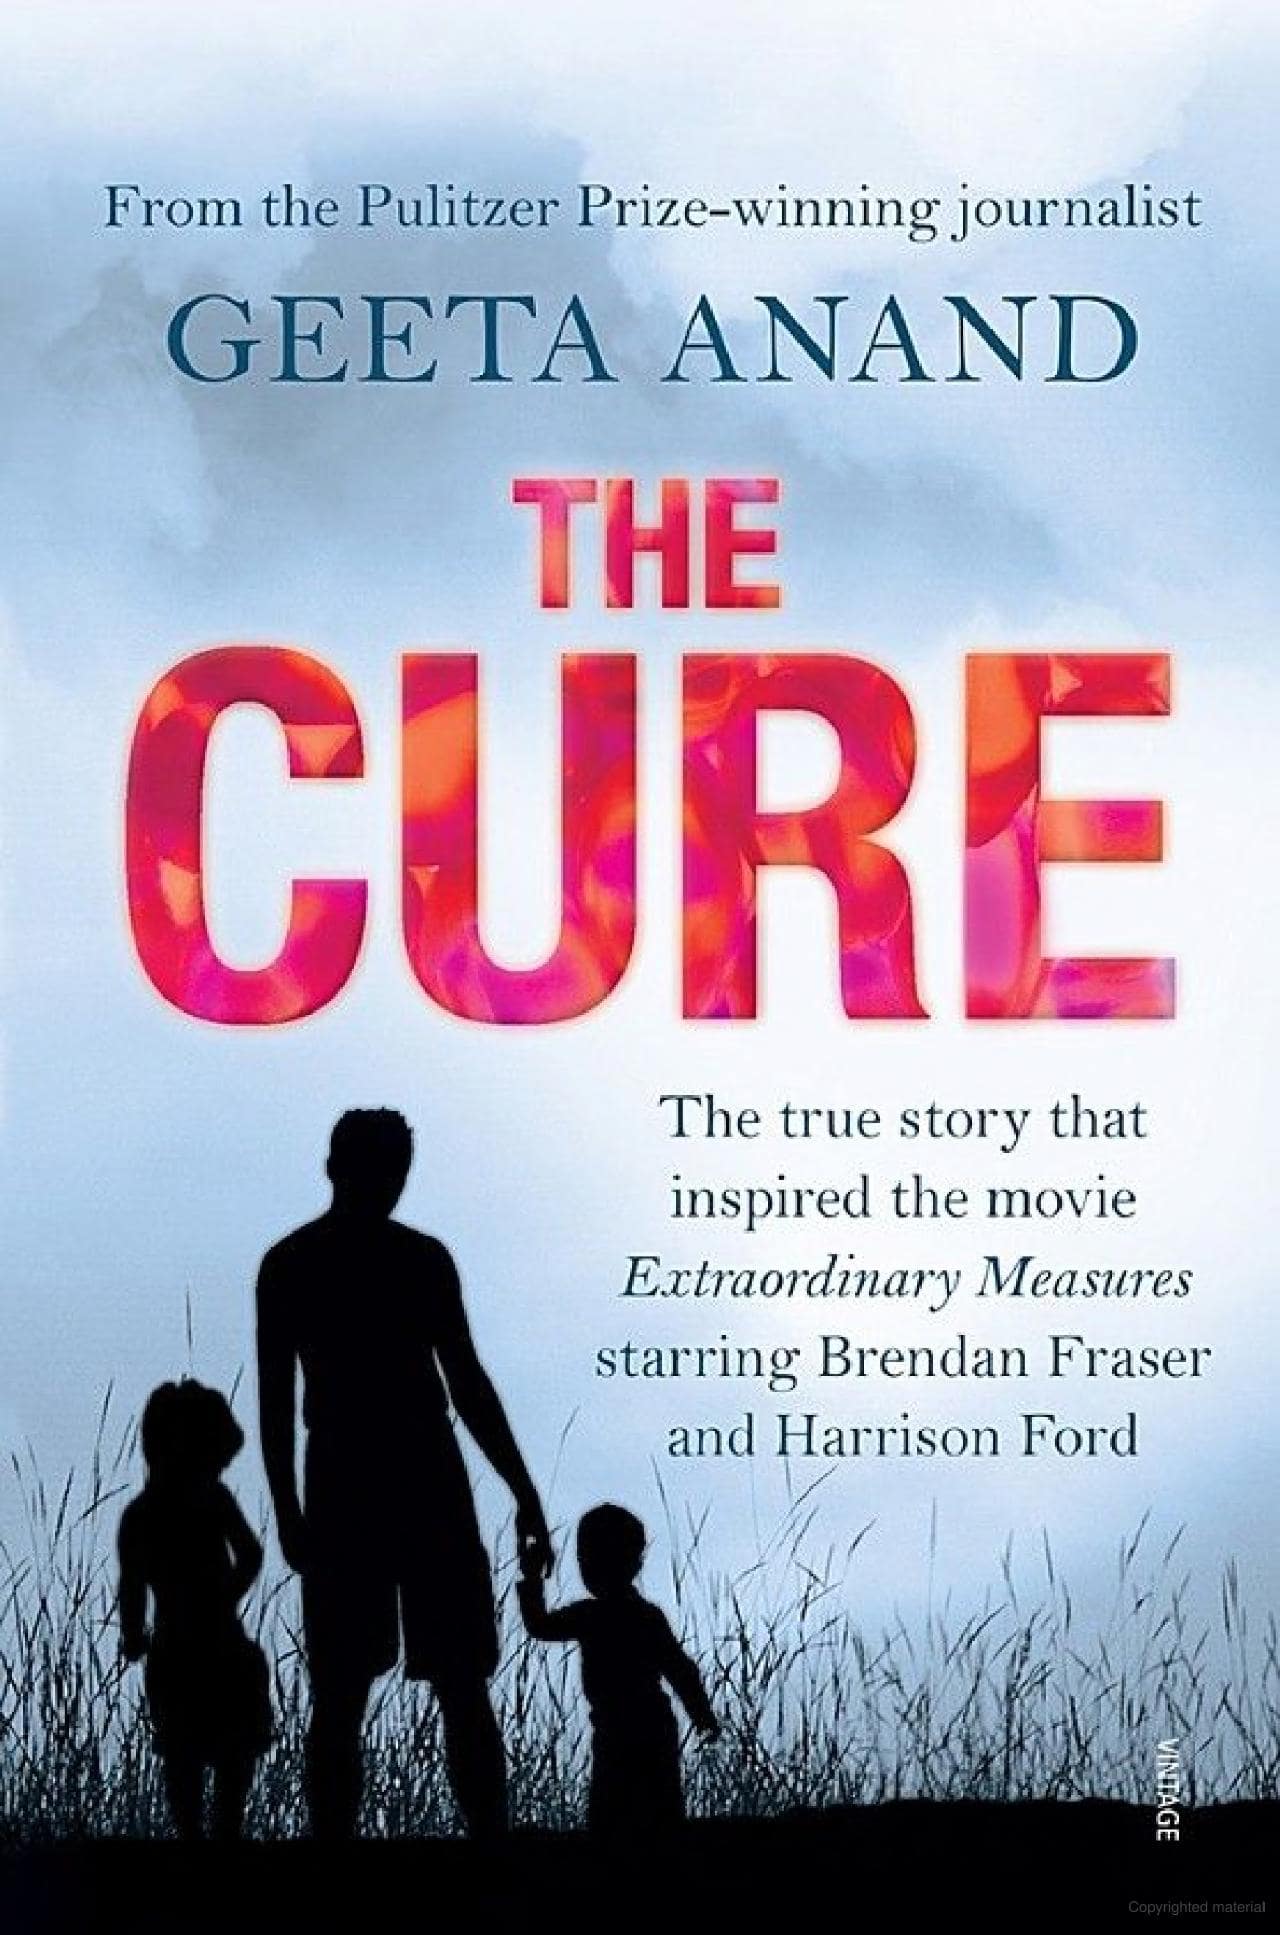 Obatnya, sebuah buku oleh Geeta Anand